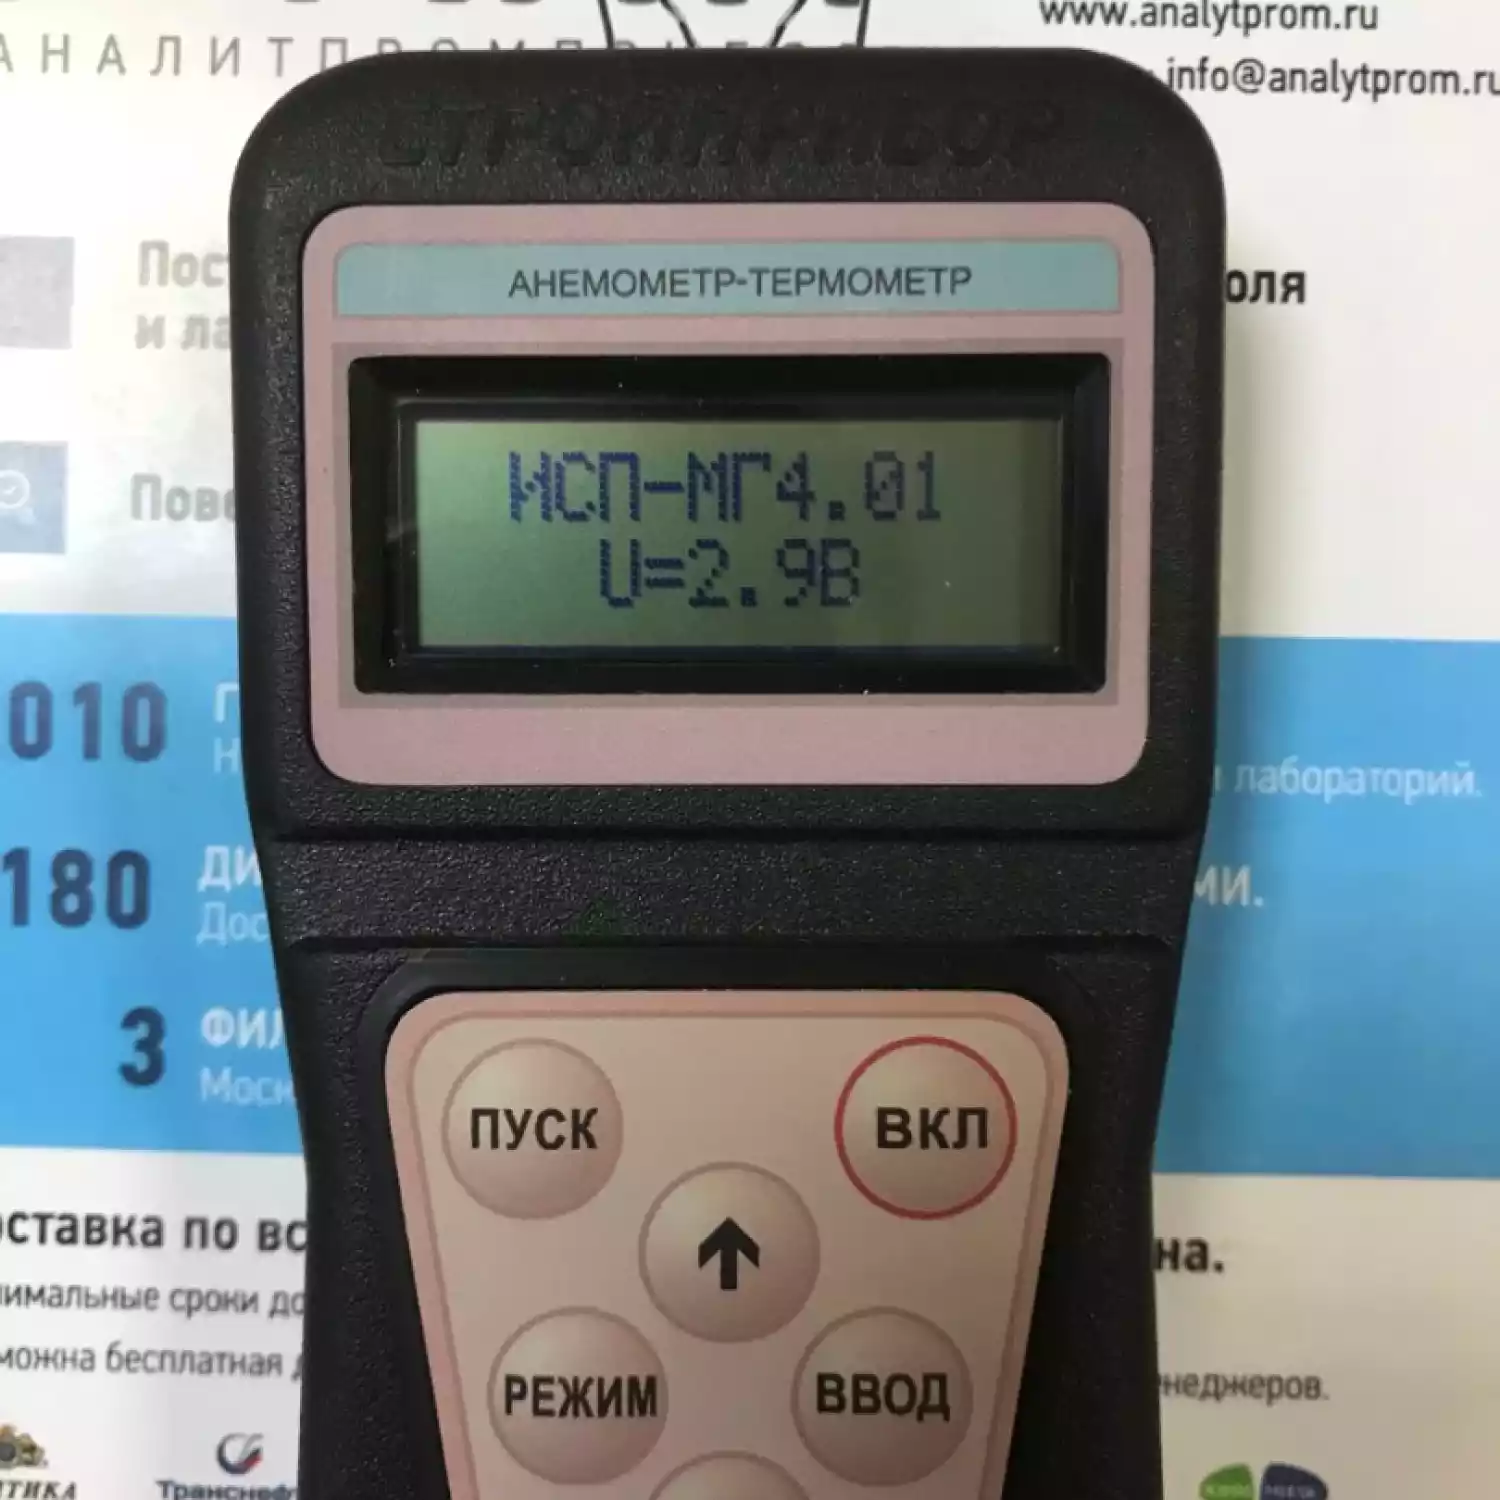 Анемометр-термометр ИСП-МГ4.01 - 3